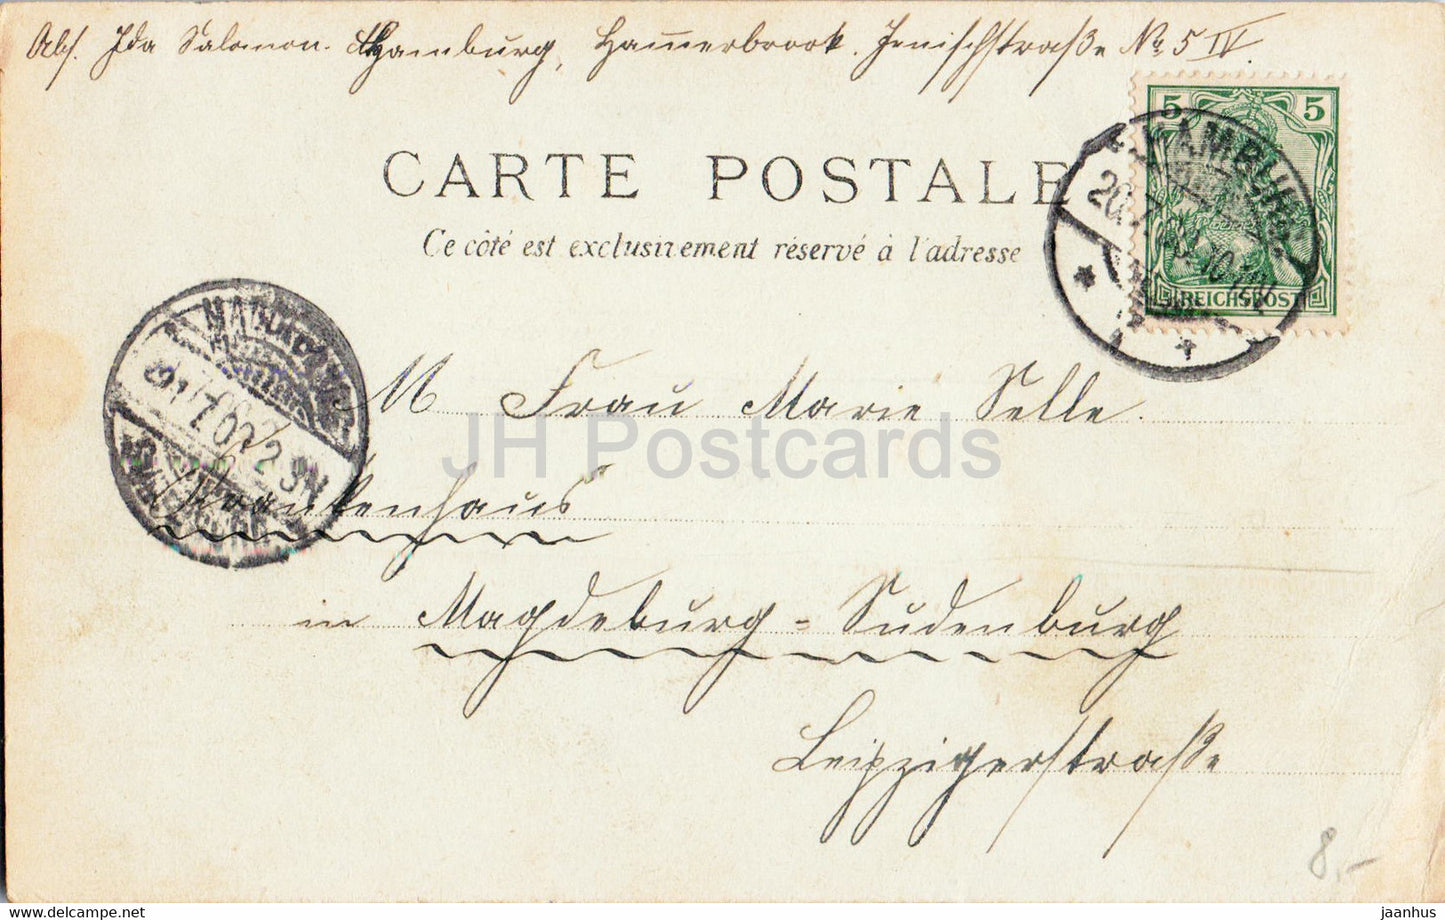 Paris - Exposition Universelle 1900 - Grand Restaurant Gruber et Cie - carte postale ancienne - 1900 - France - occasion